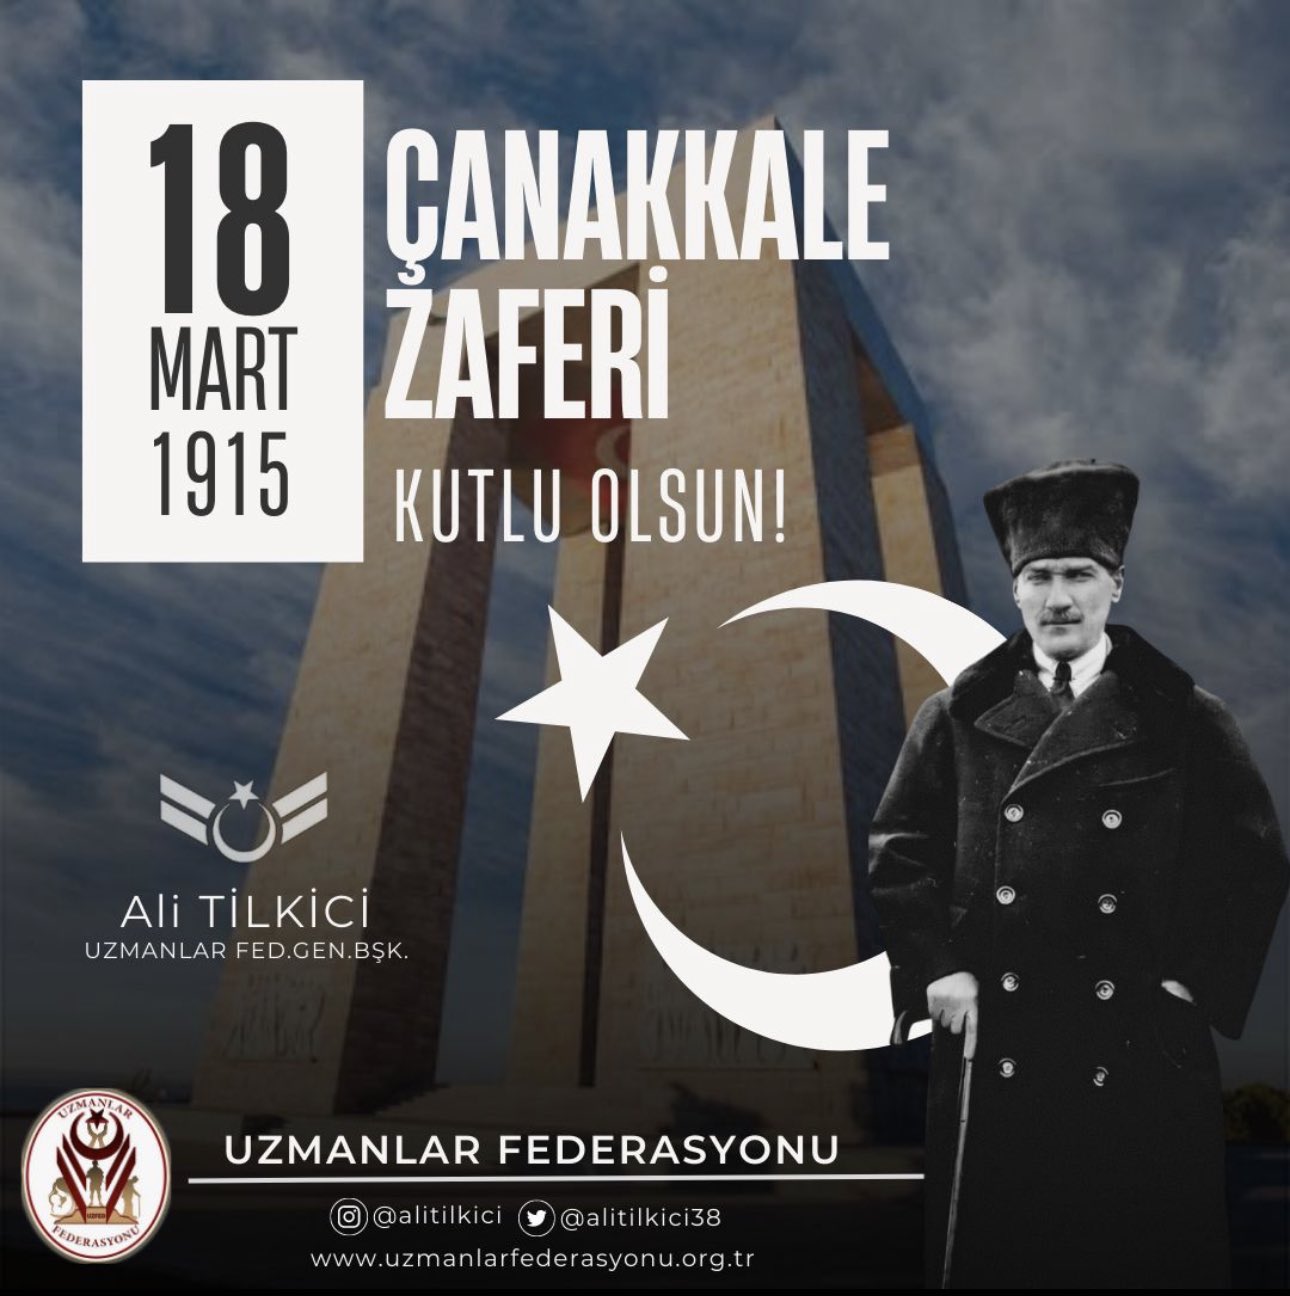   18 Mart Şehitleri Anma Günü ve Çanakkale Zaferi’nin 108'nci yıl dönümünde, başta Gazi Mustafa Kemal Atatürk ve silah arkadaşları olmak üzere tüm Şehitlerimizi rahmet, minnetle anıyoruz. 